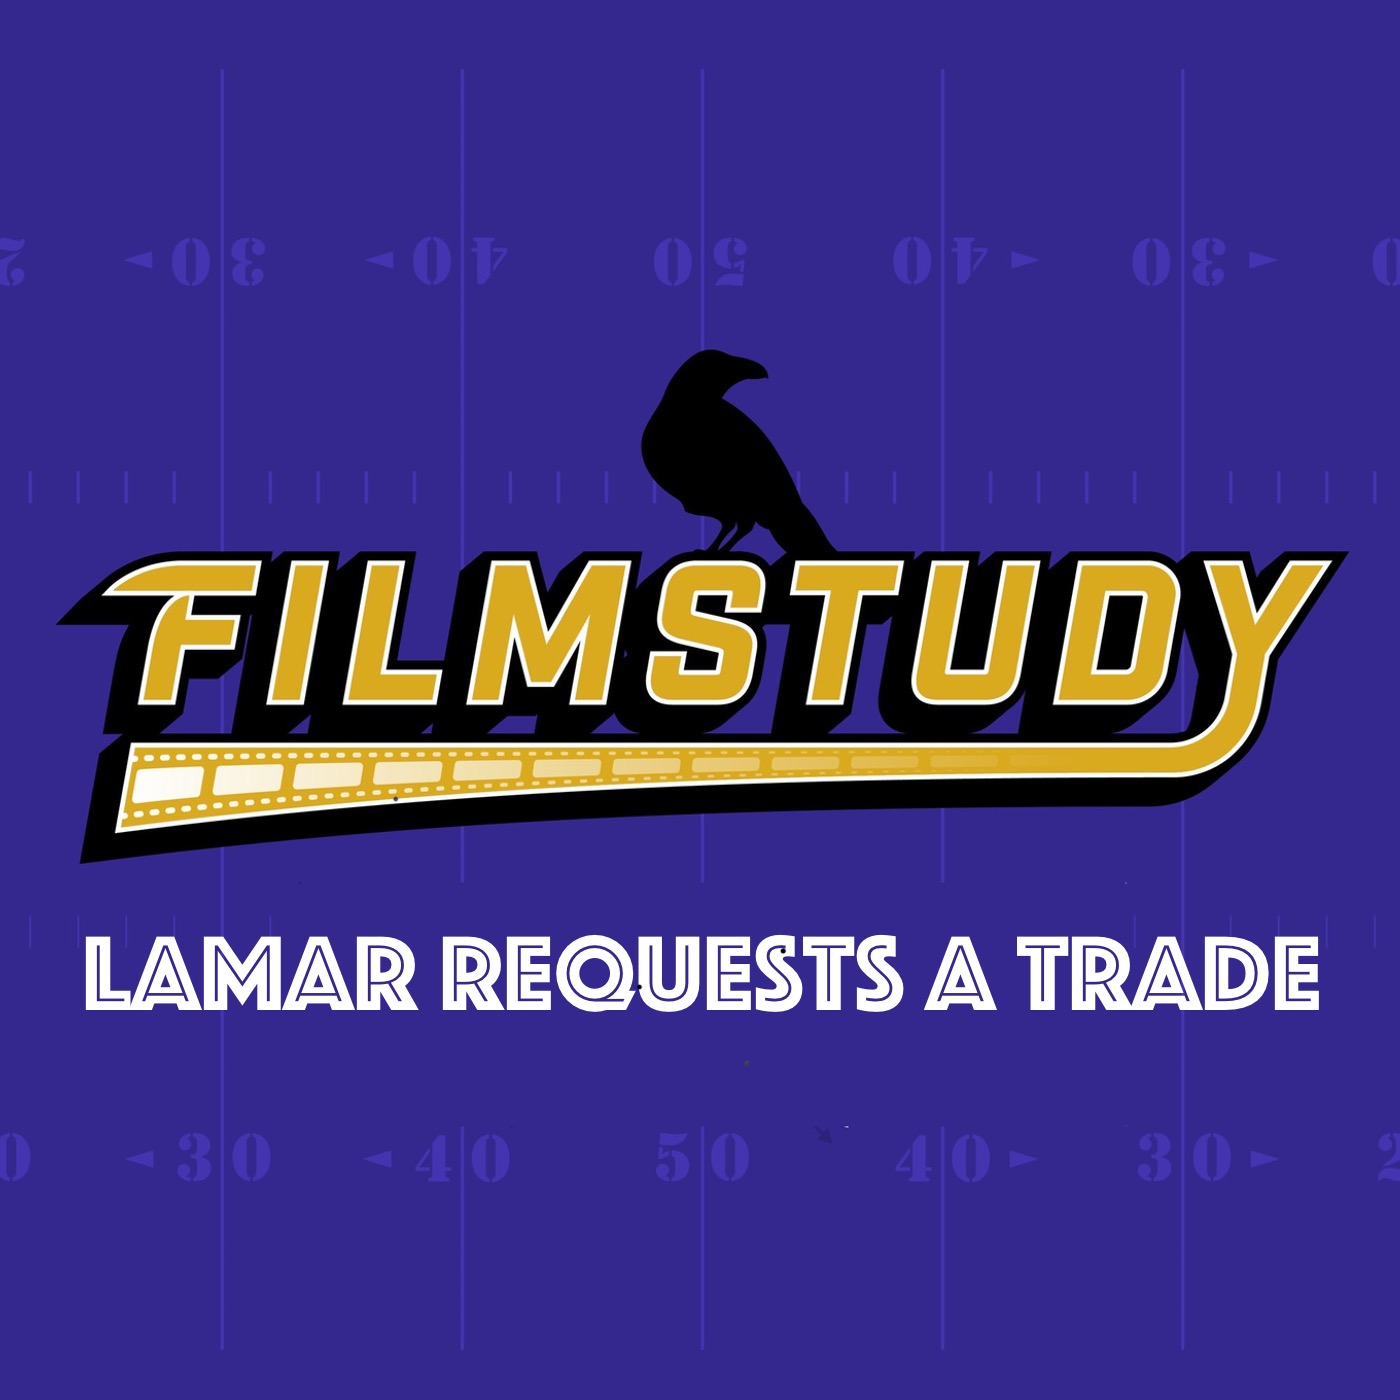 Lamar Requests A Trade